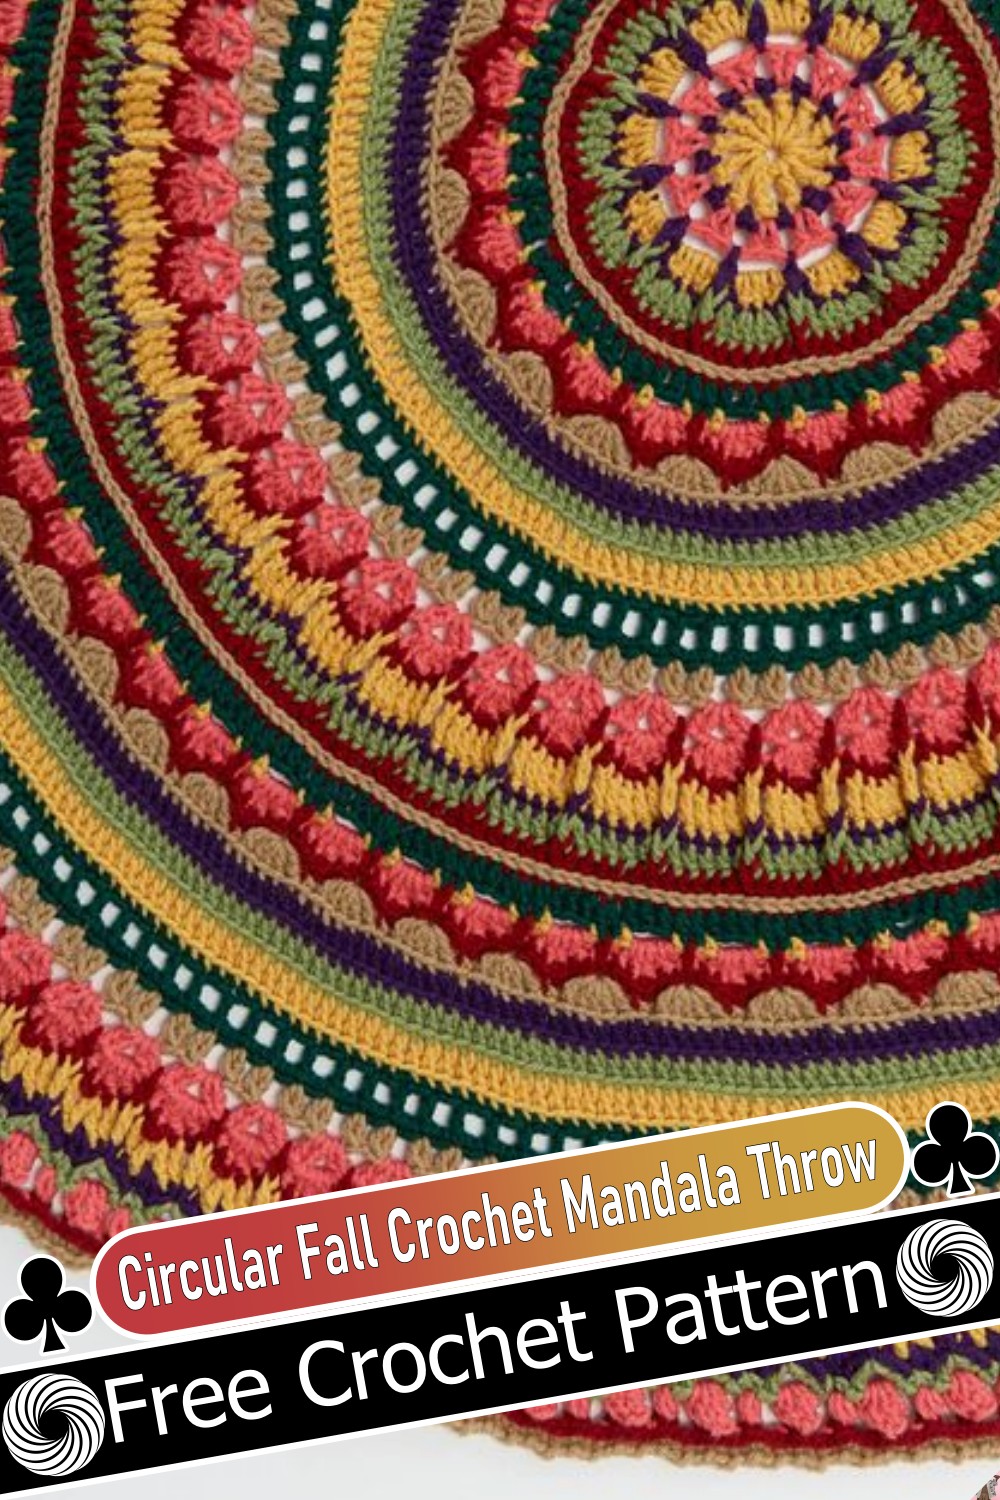 Circular Fall Crochet Mandala Throw